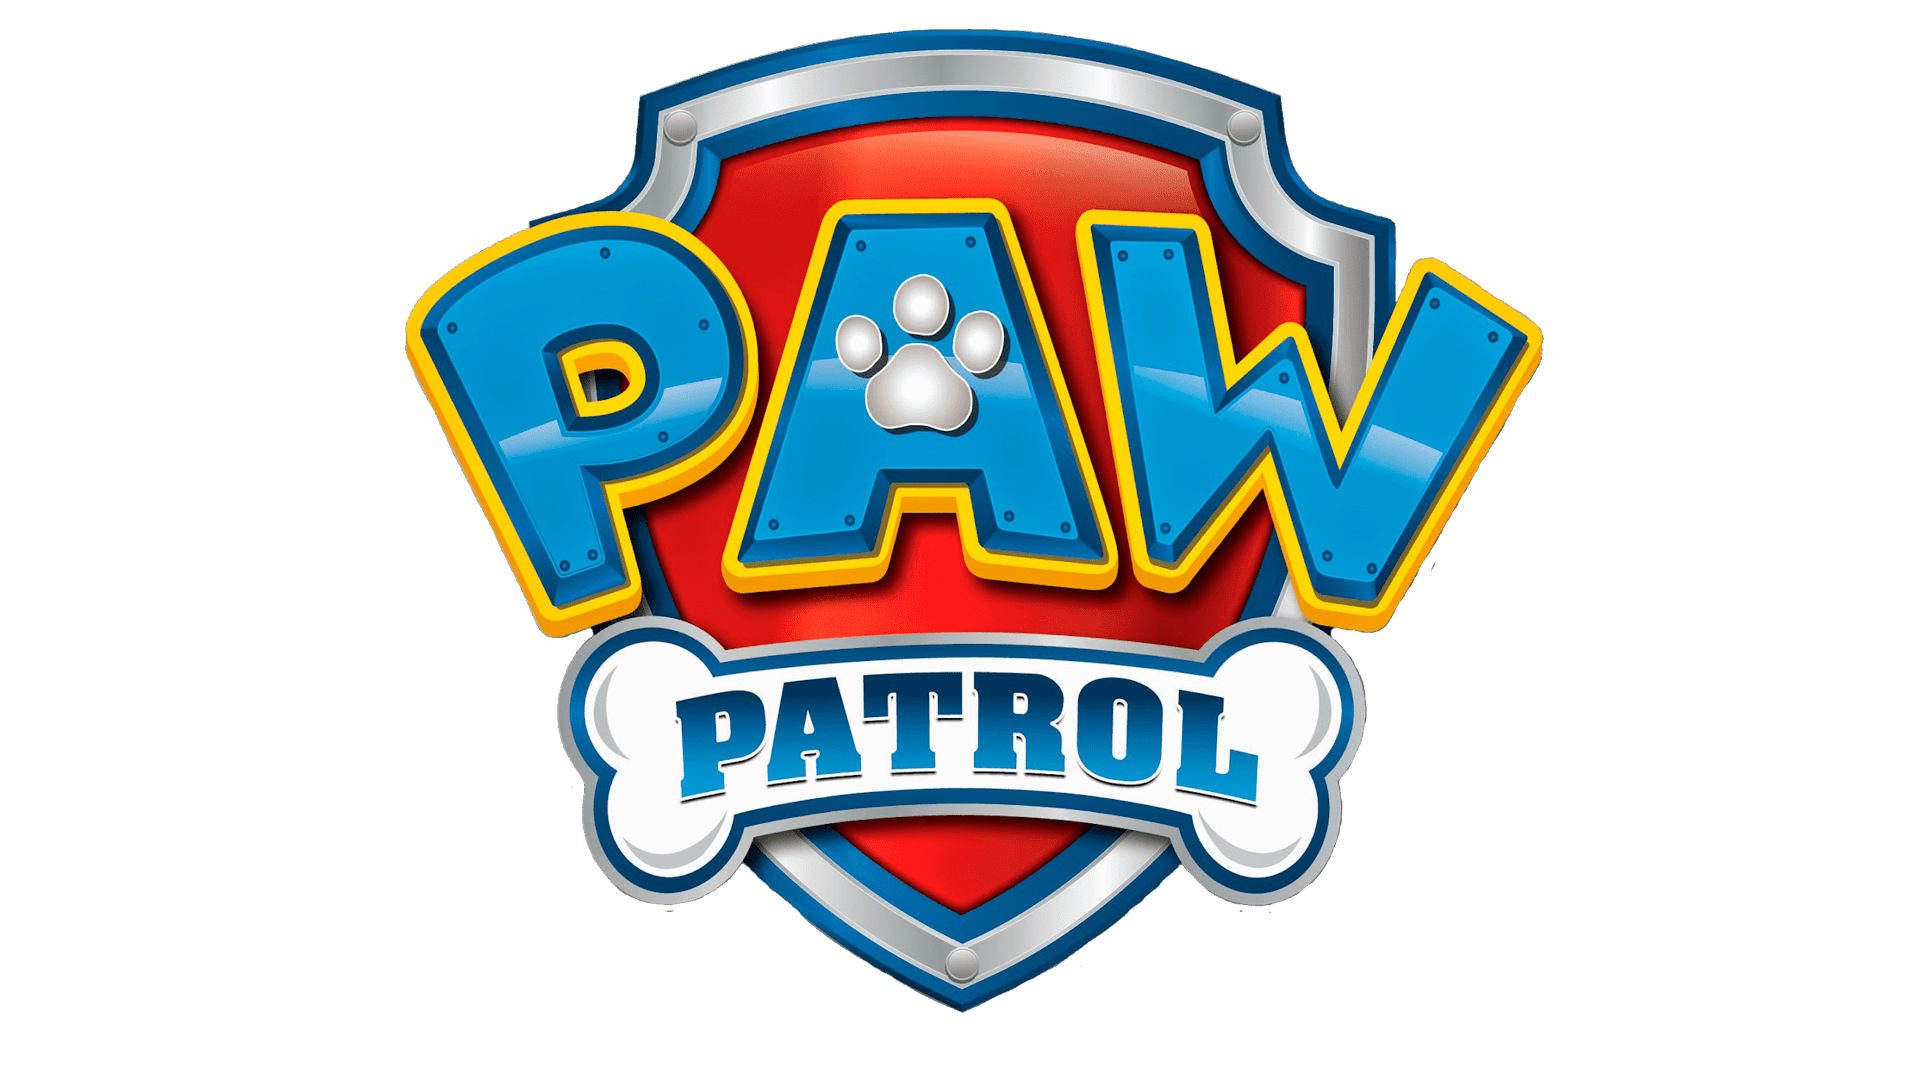 Timer Anordnung von Schnitt paw patrol logo Sui Parade Statistisch